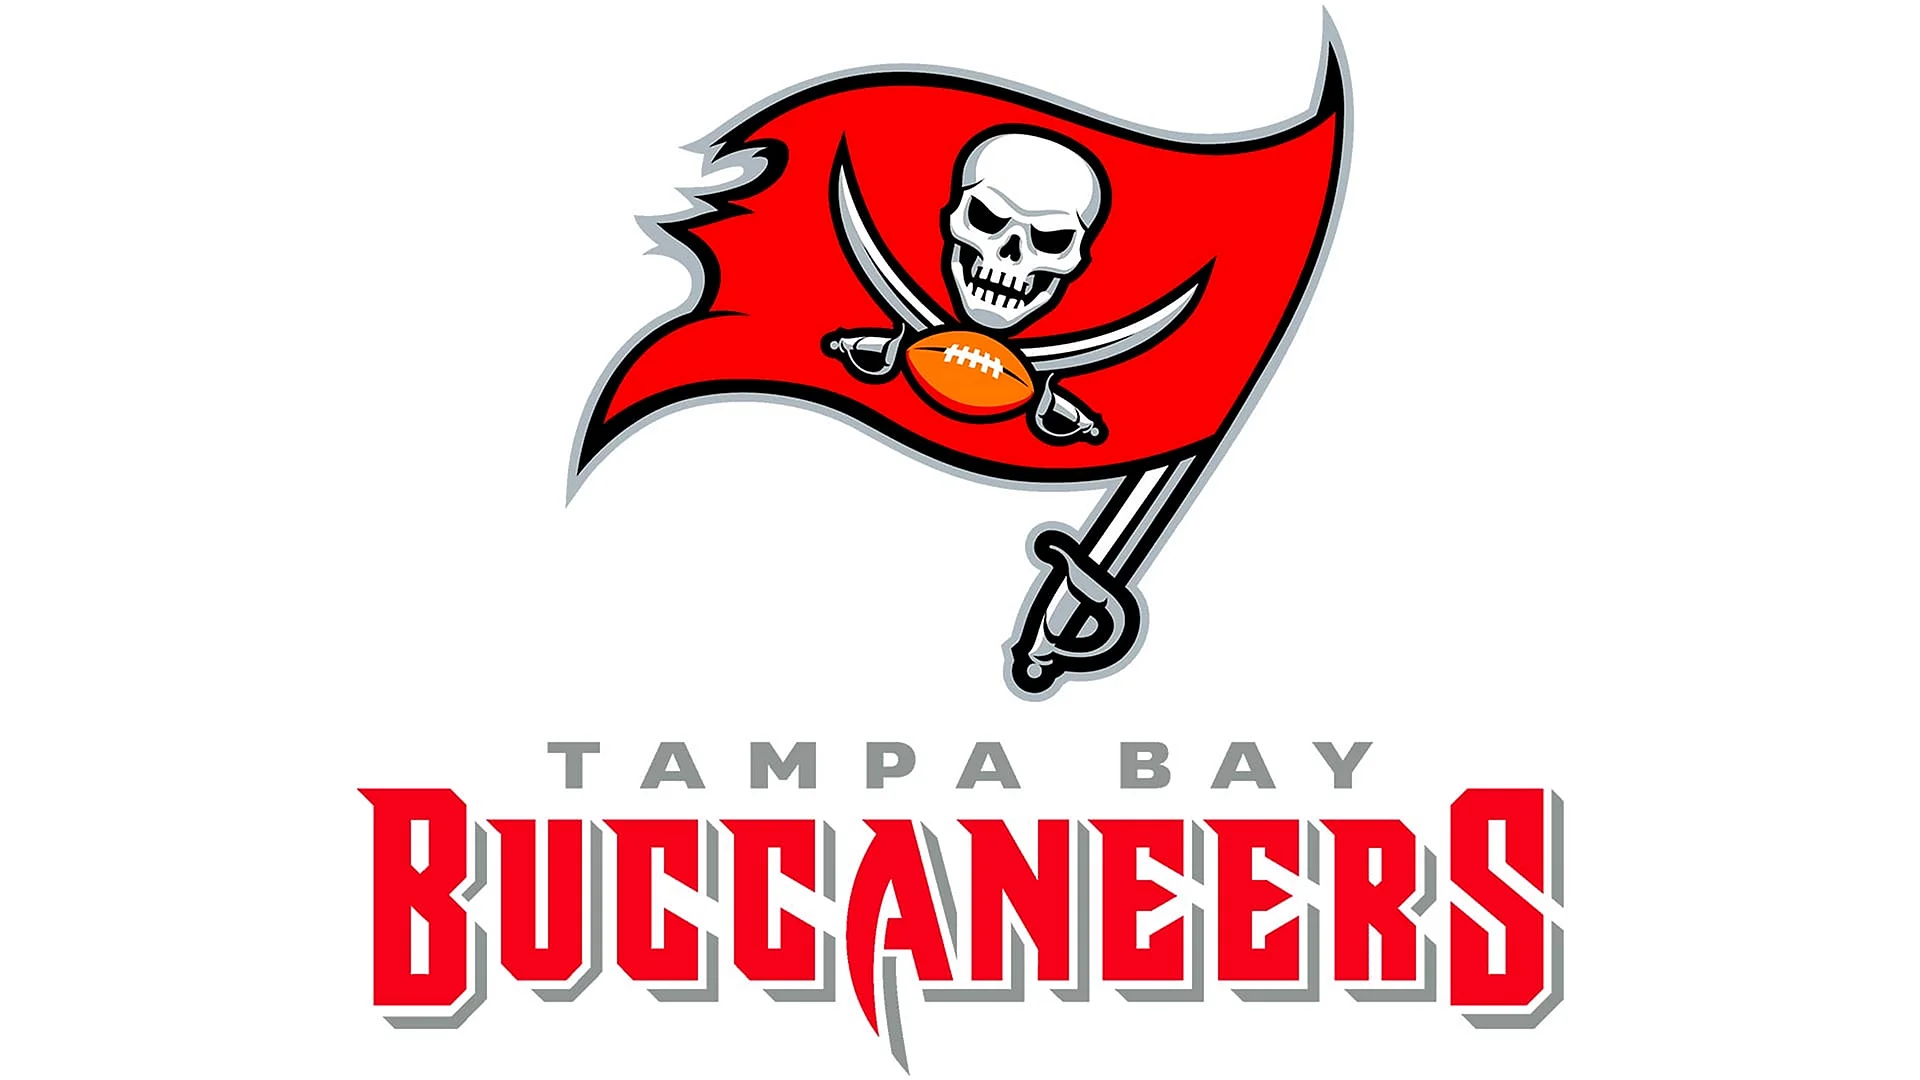 Buccaneers text logo Wallpaper